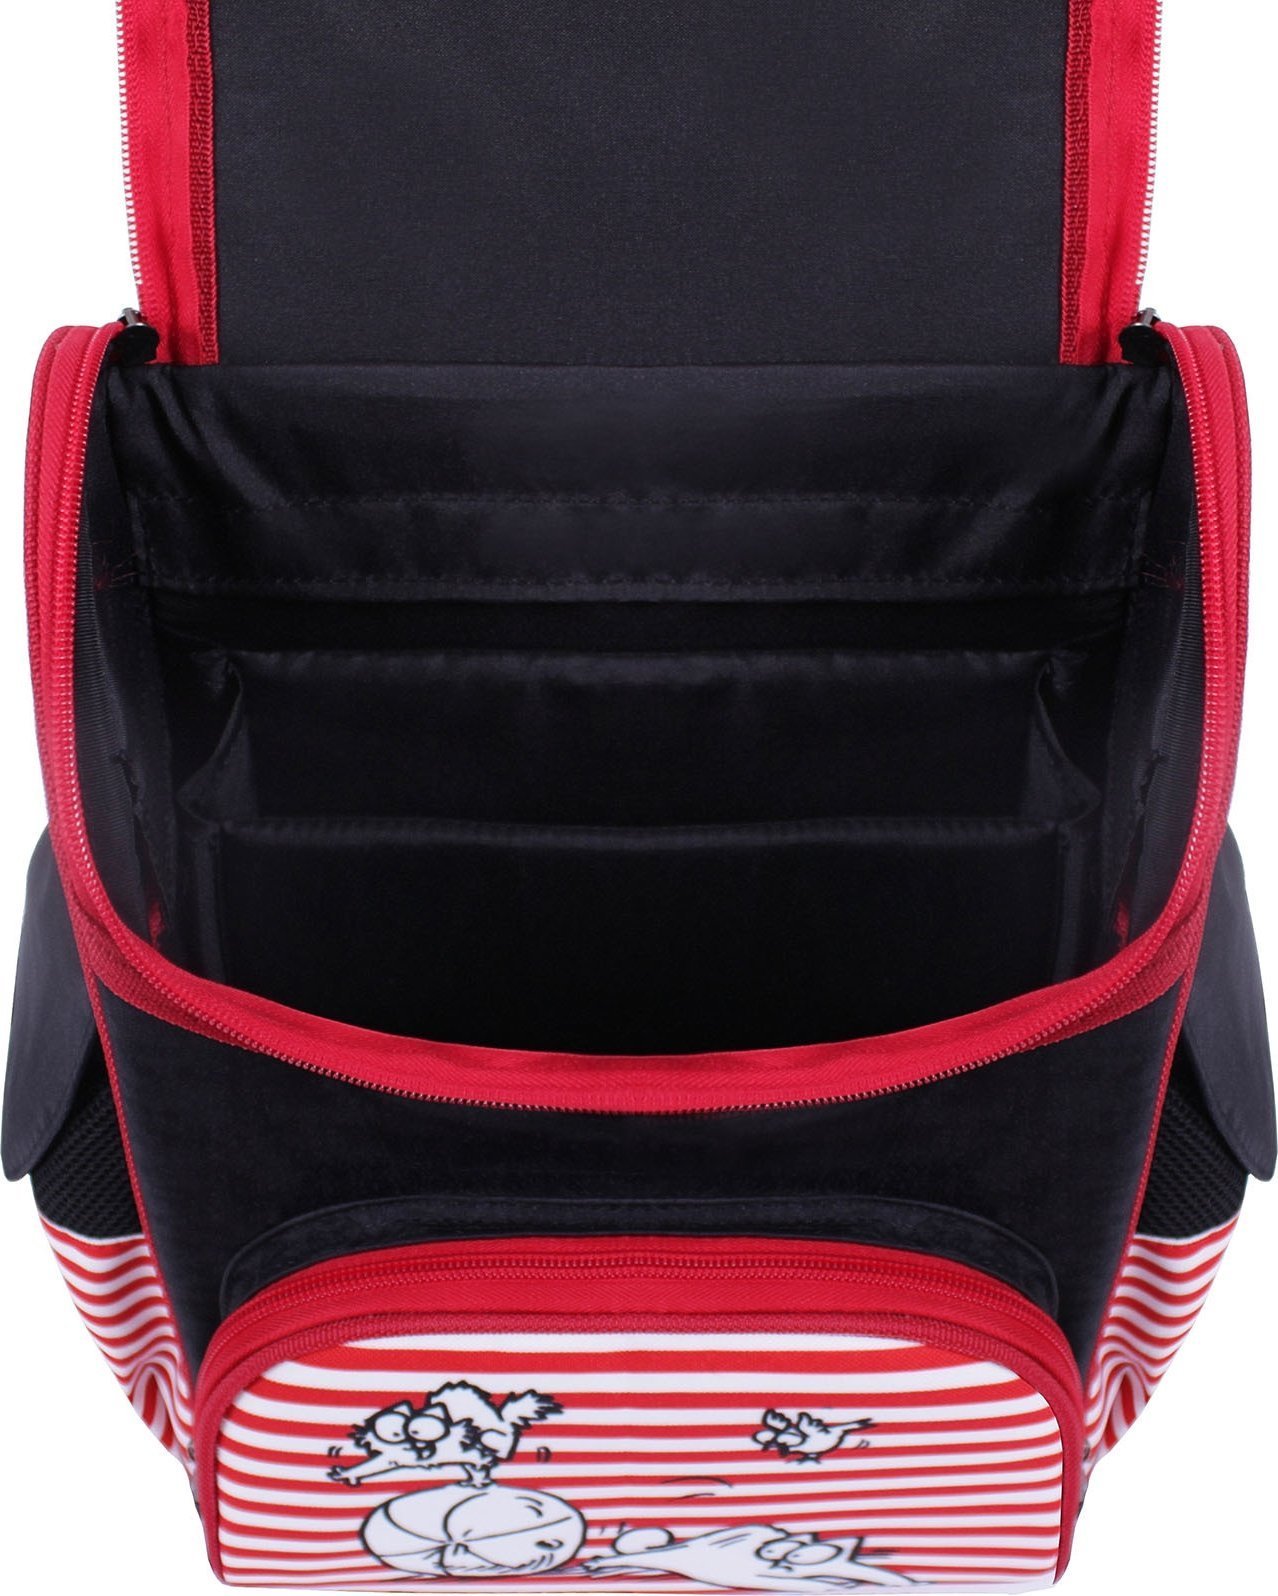 Каркасный школьный рюкзак из текстиля Simon's cat - Bagland 53760